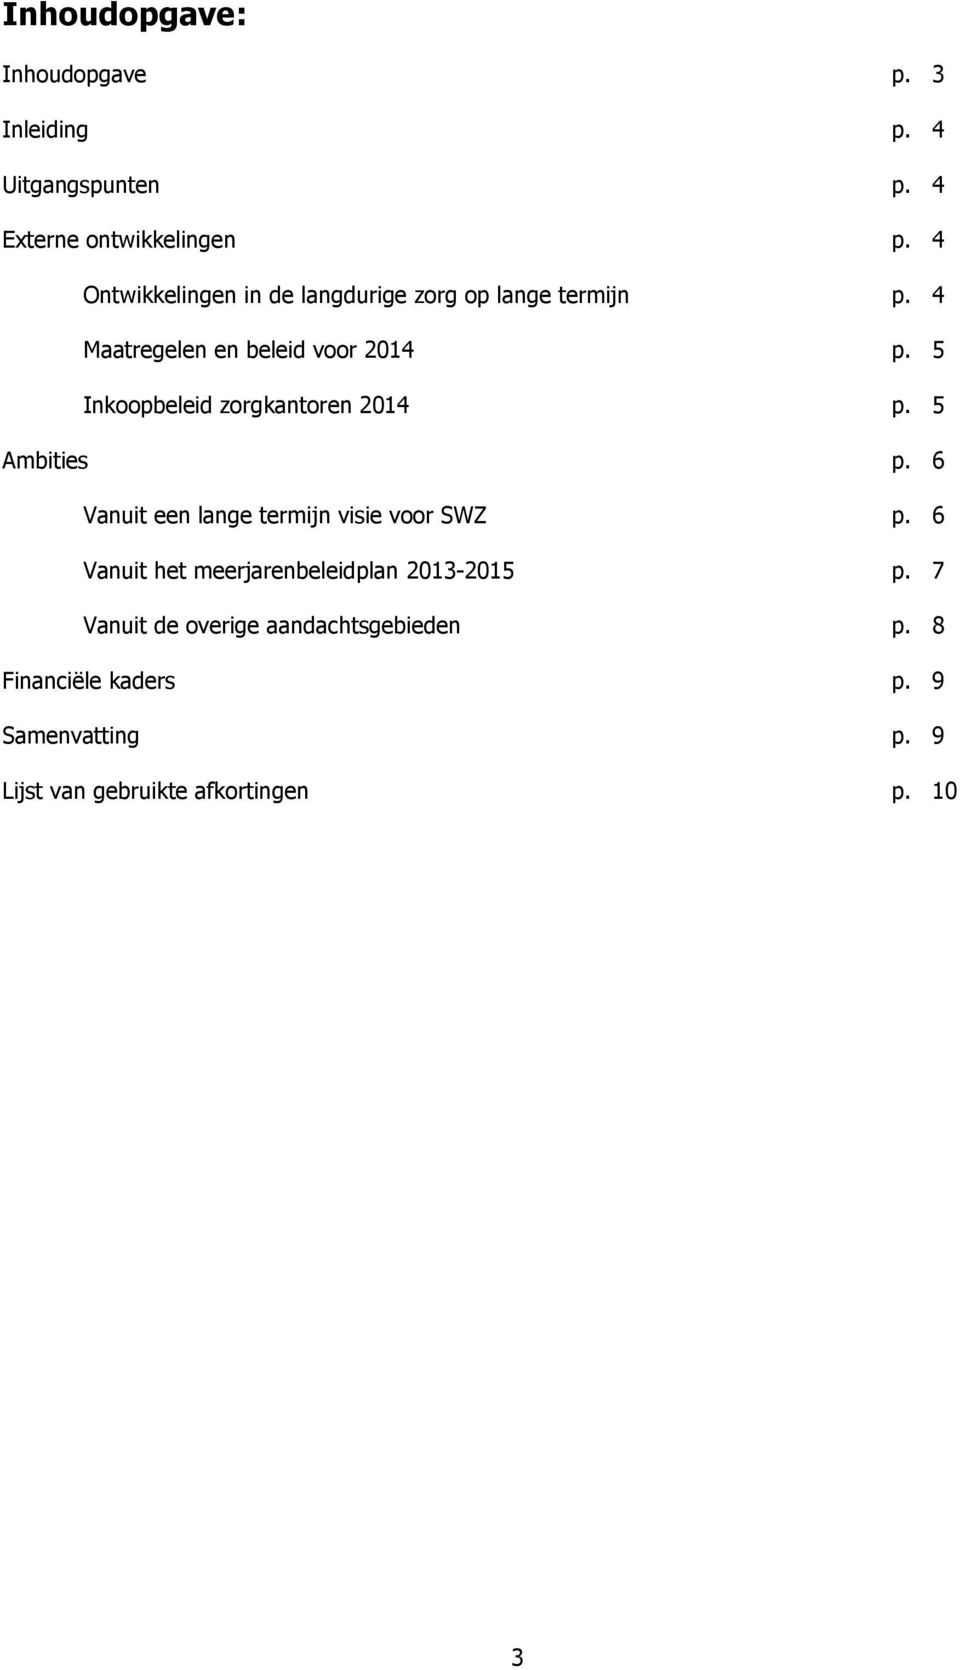 5 Inkoopbeleid zorgkantoren 2014 p. 5 Ambities p. 6 Vanuit een lange termijn visie voor SWZ p.